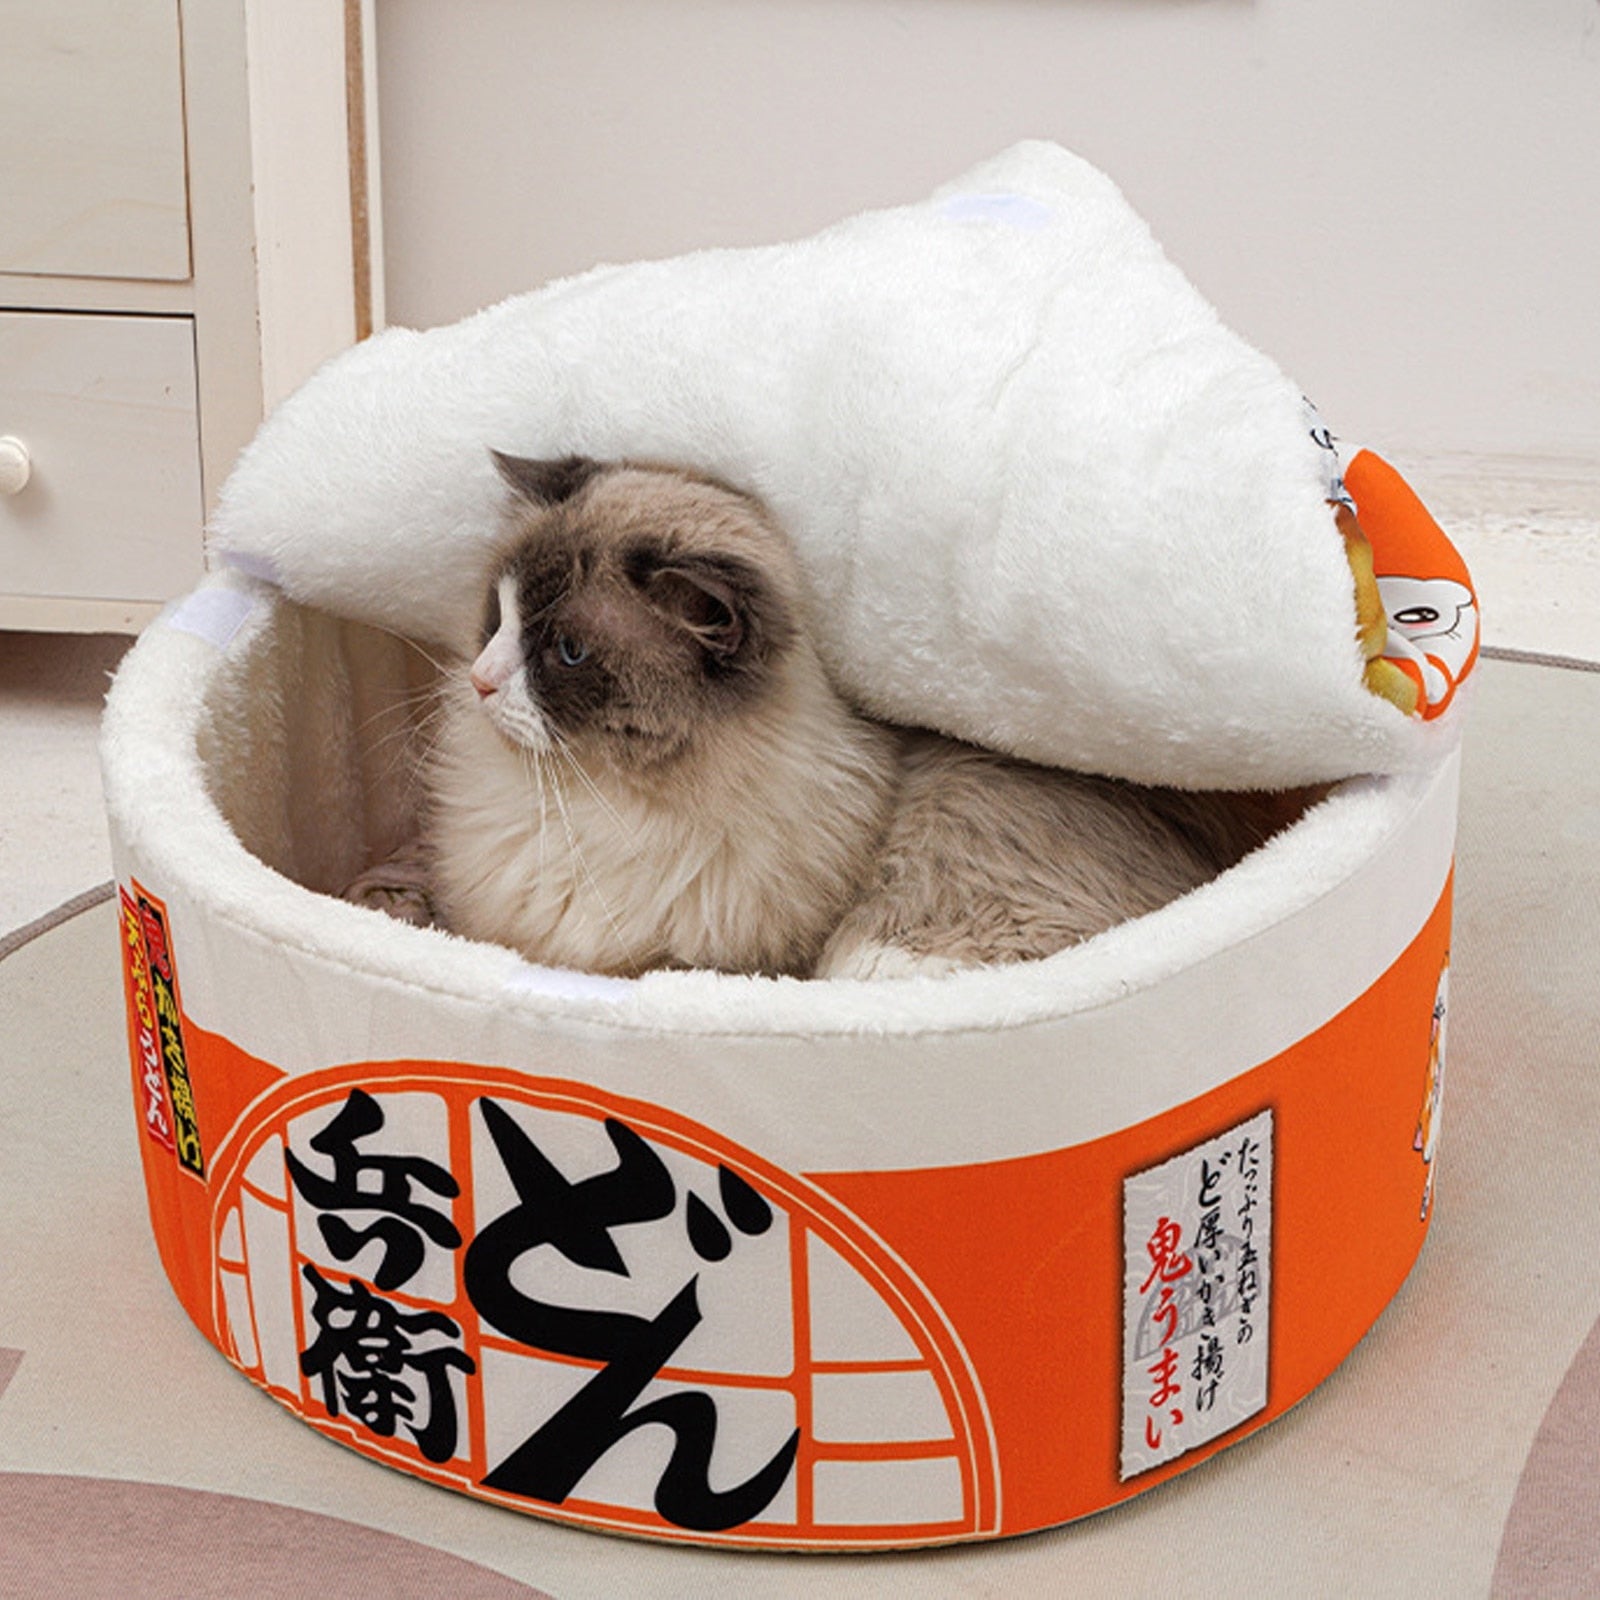 Ramen Cat Bed